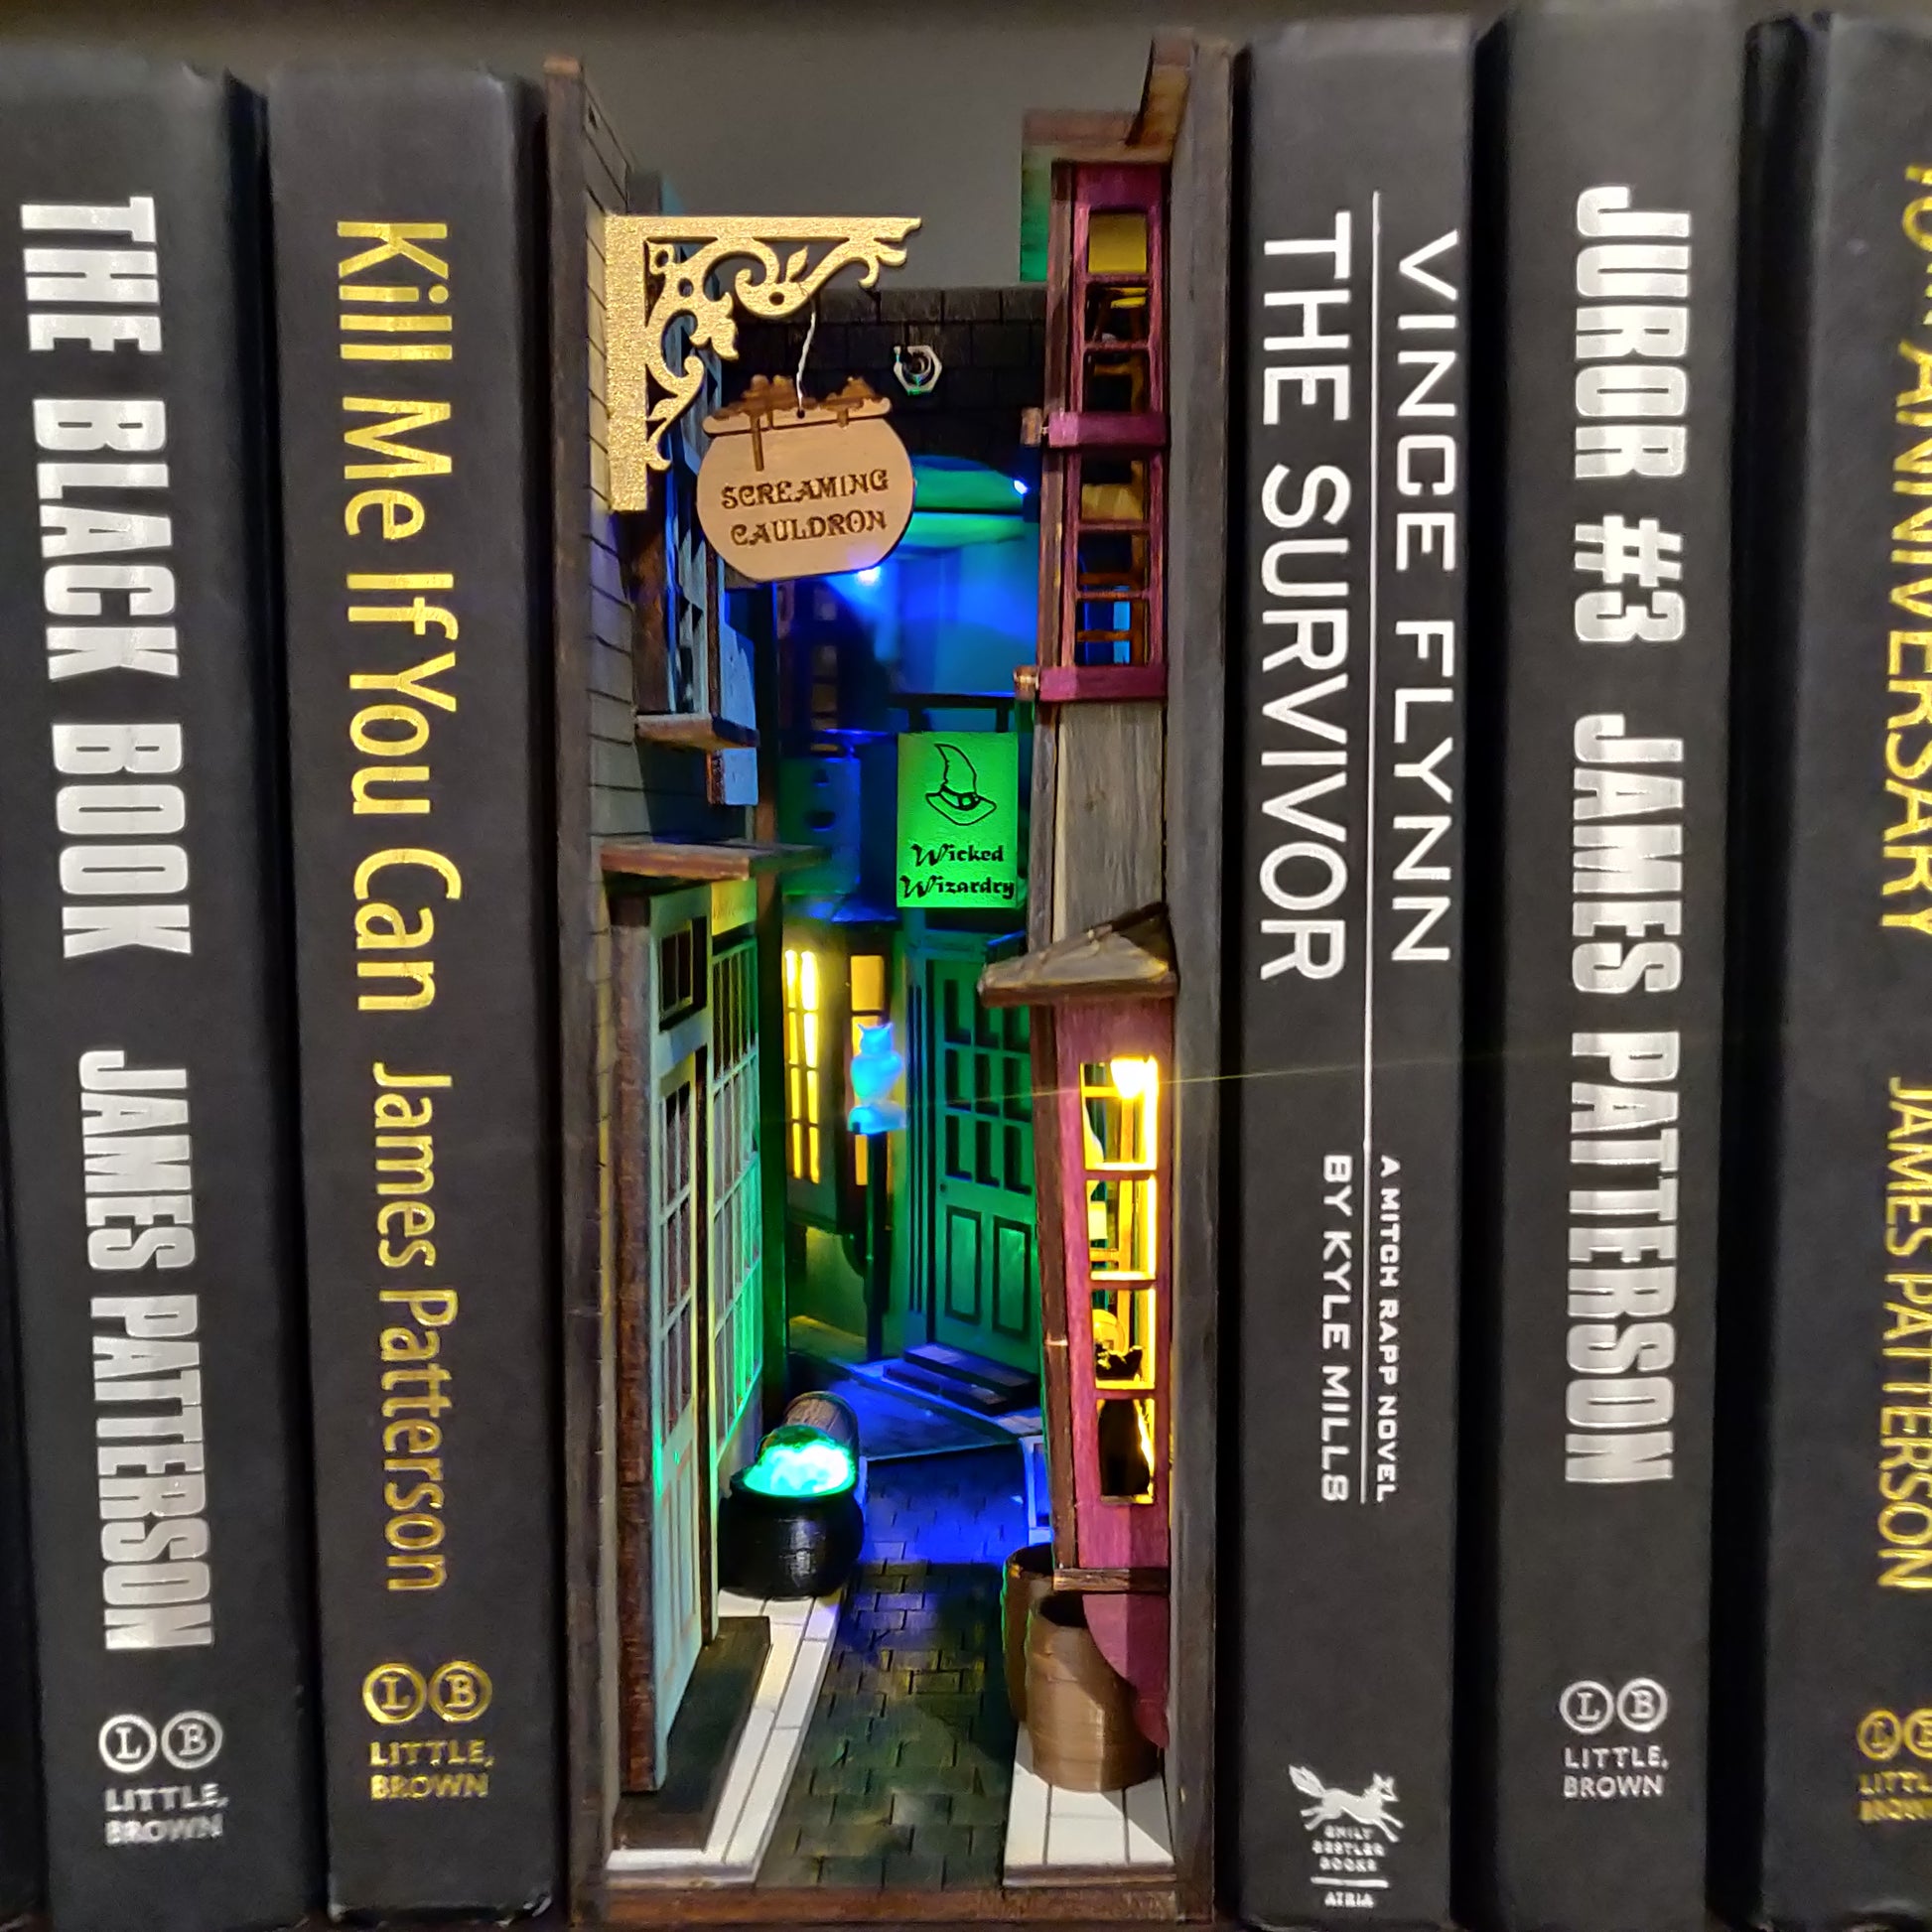 Cyberpunk MiniAlley Booknook